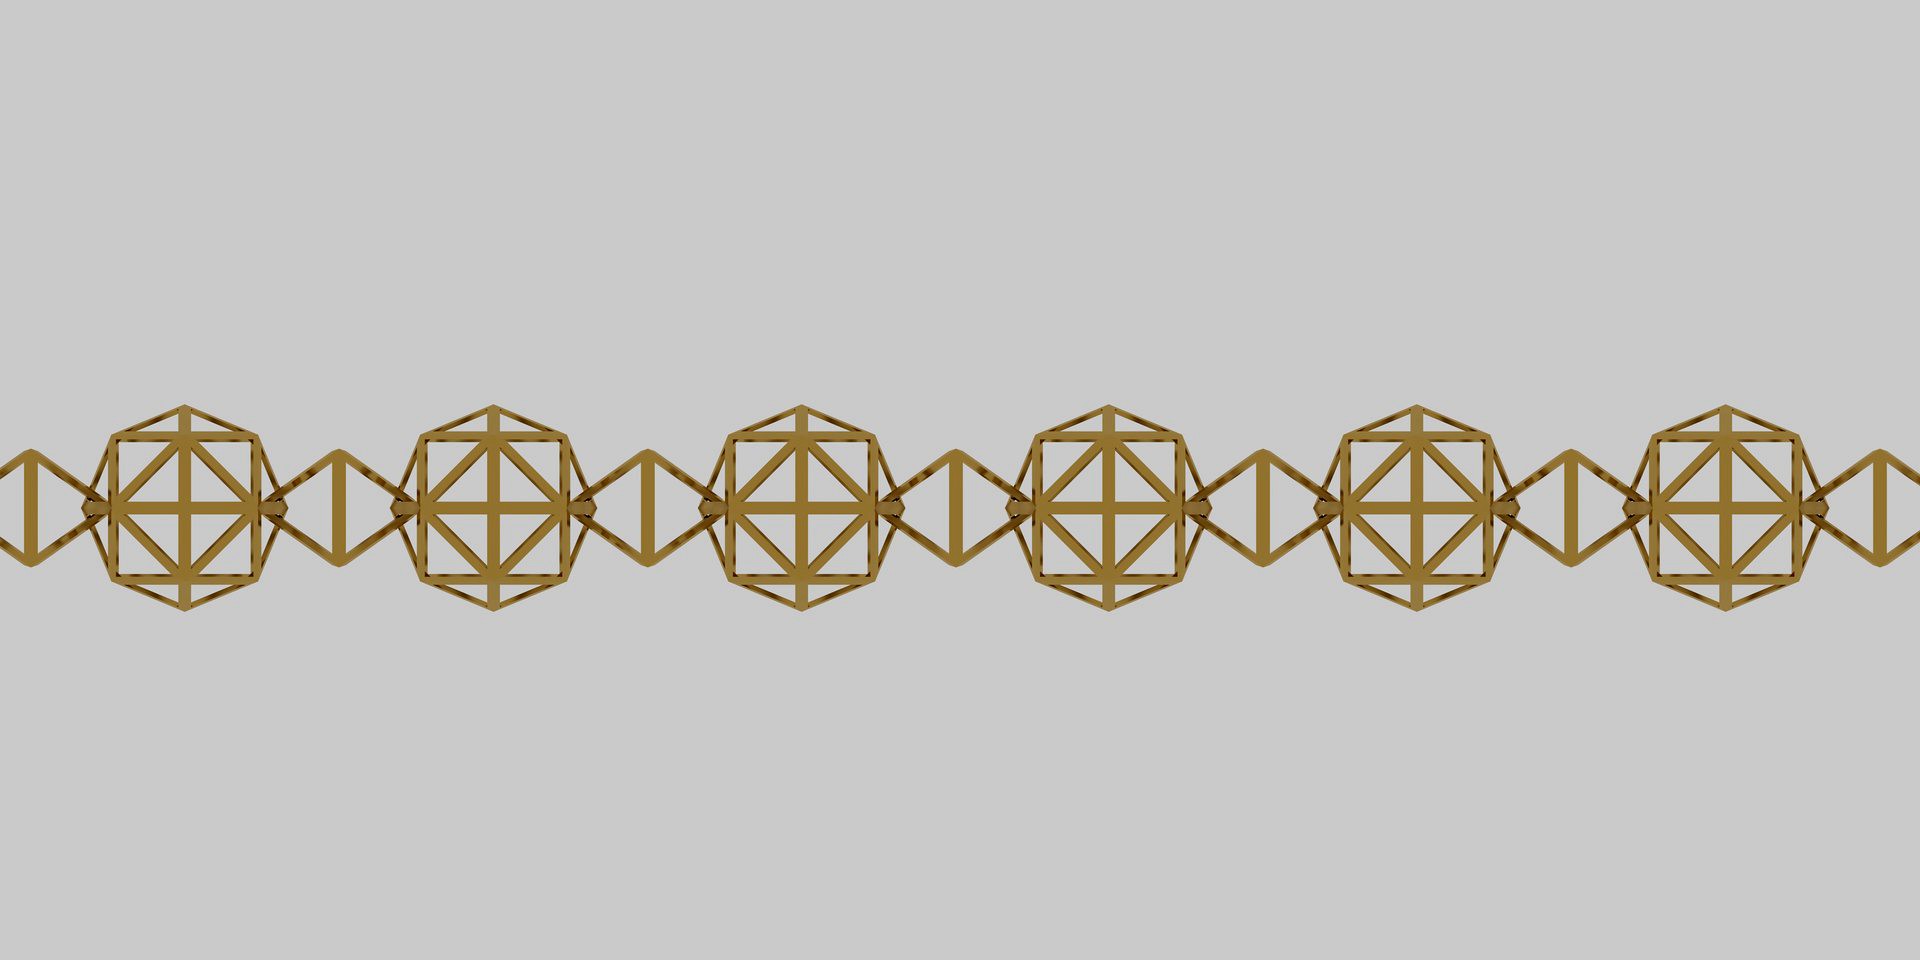 Plato chain